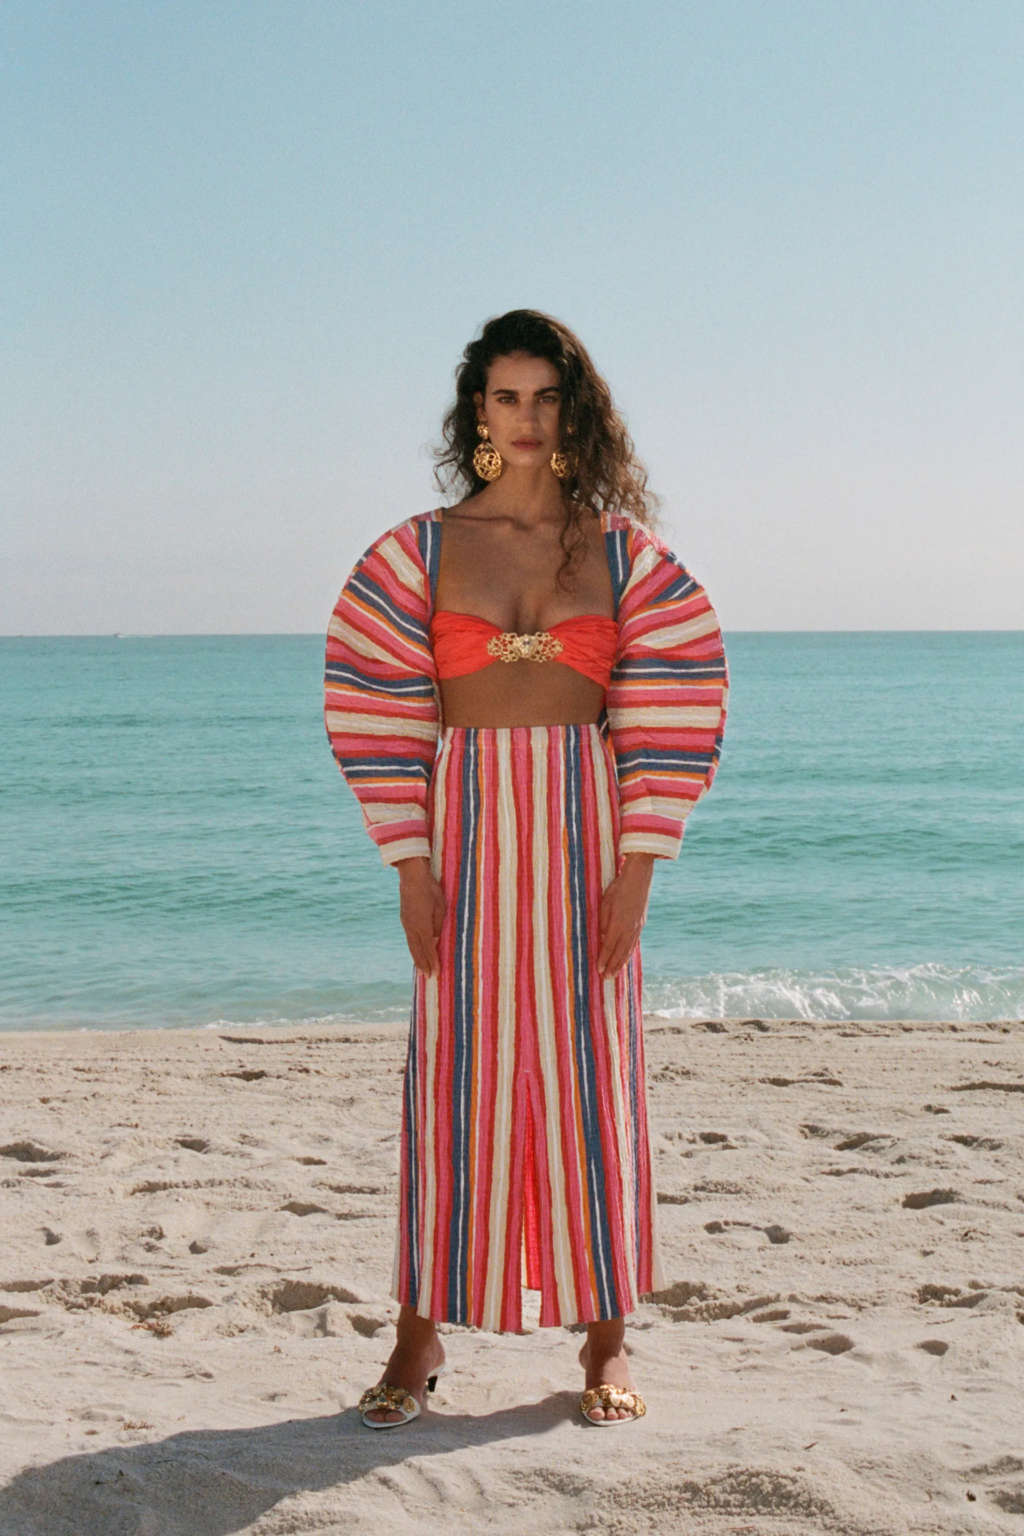 Chica en la playa con vestido de colores de mangas anchas abullonada